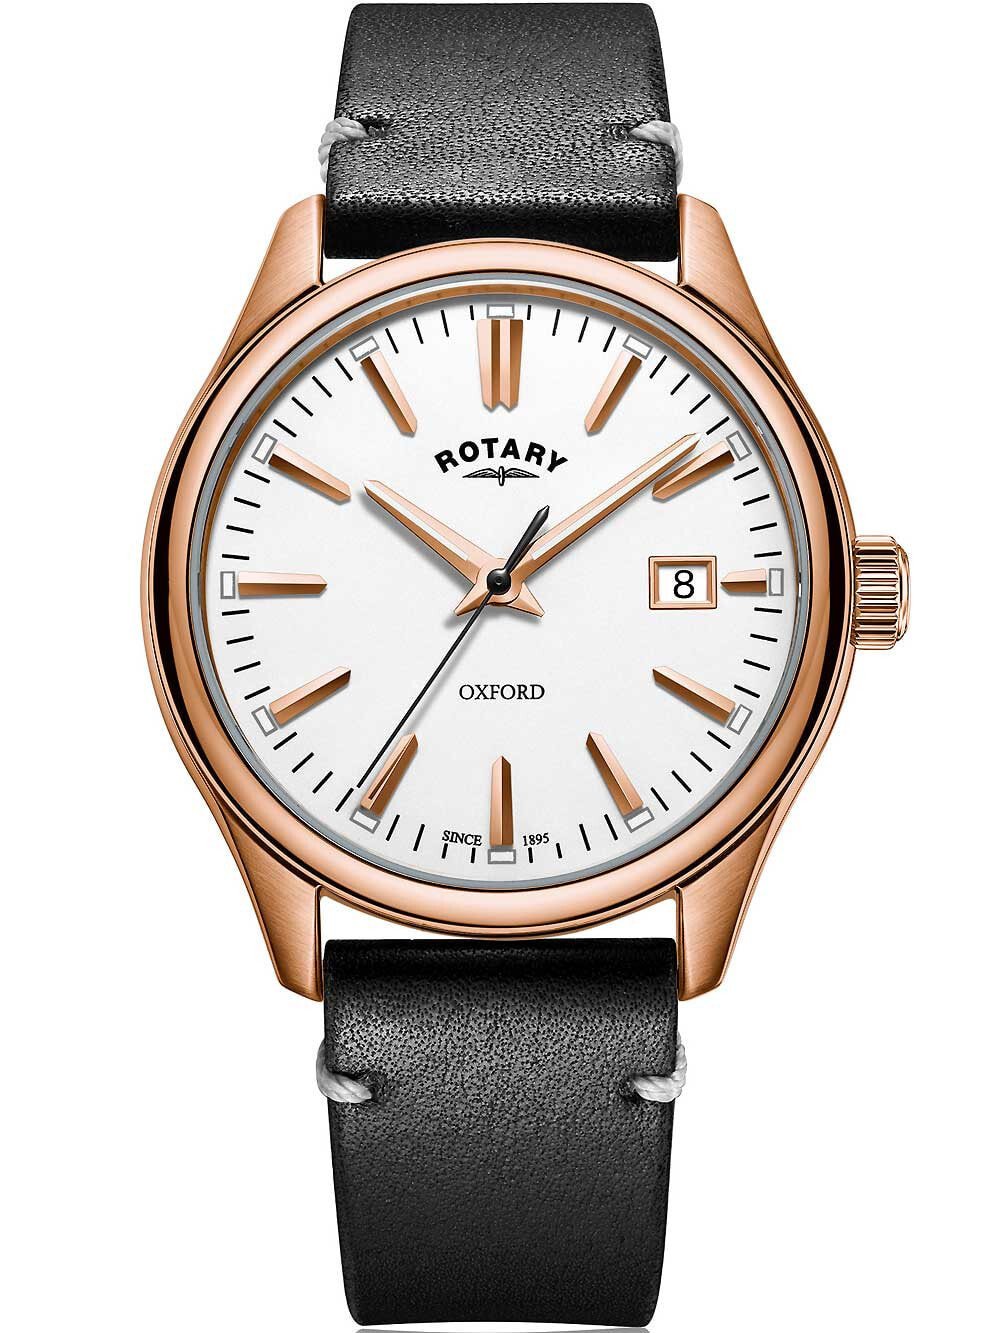 Мужские наручные часы с черным кожаным ремешком  Rotary GS05094/02 Oxford mens watch 40mm 5ATM